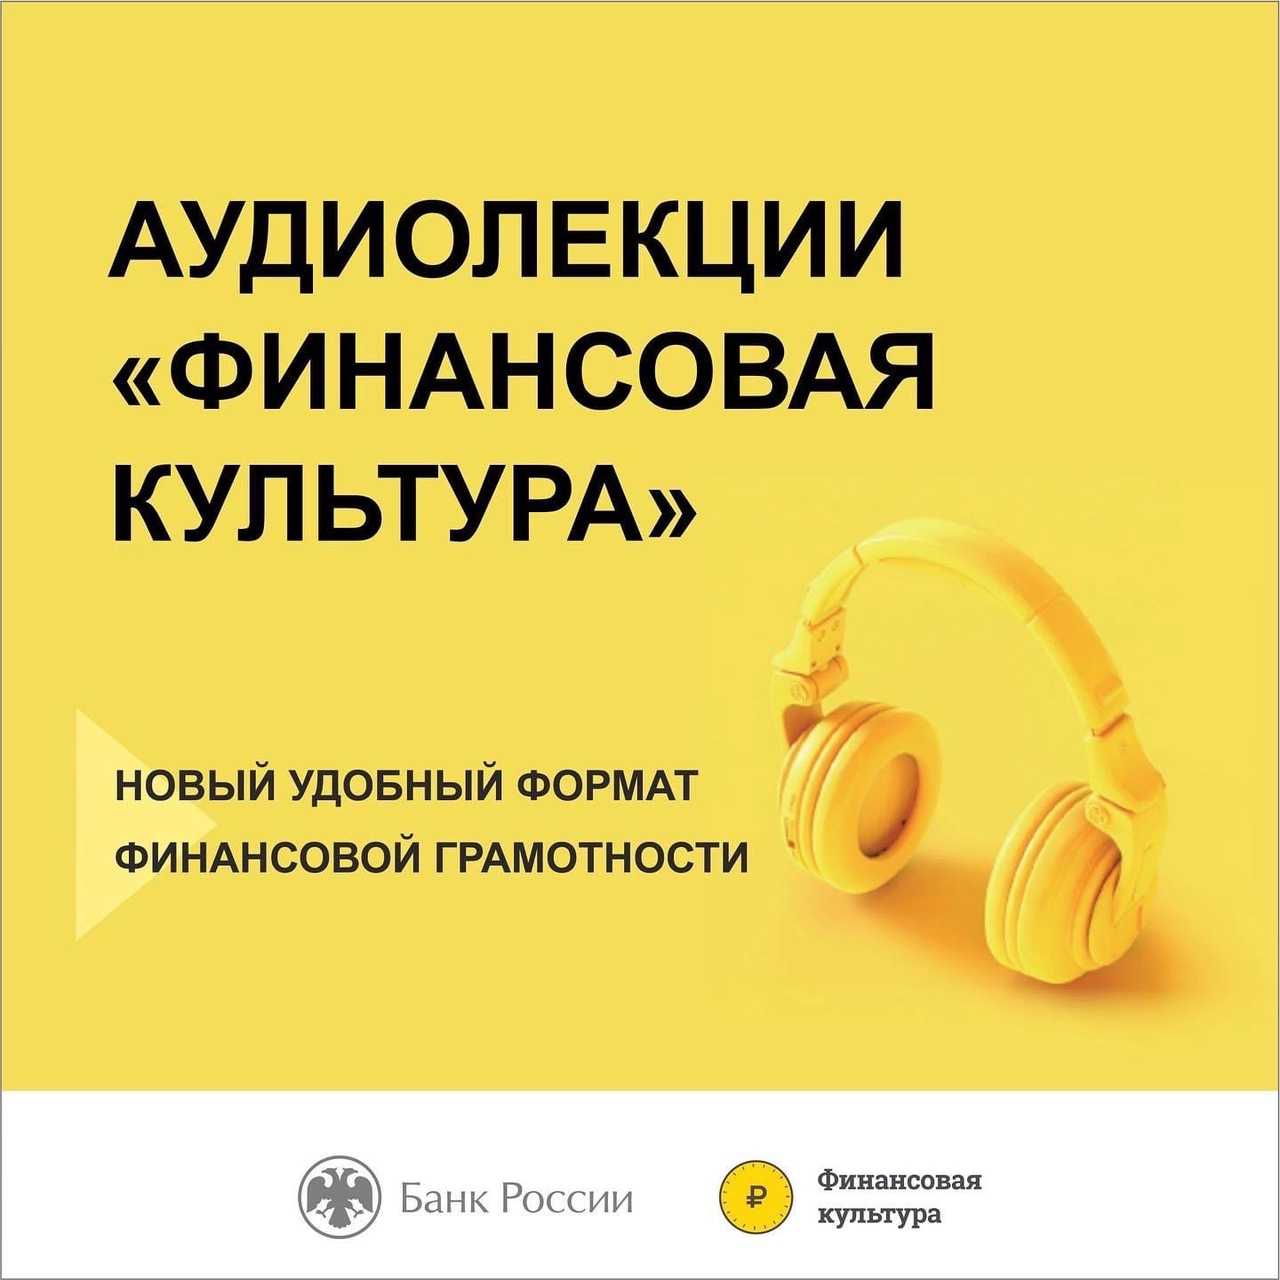 Бесплатные аудиолекции Банка России по финансовой грамотности